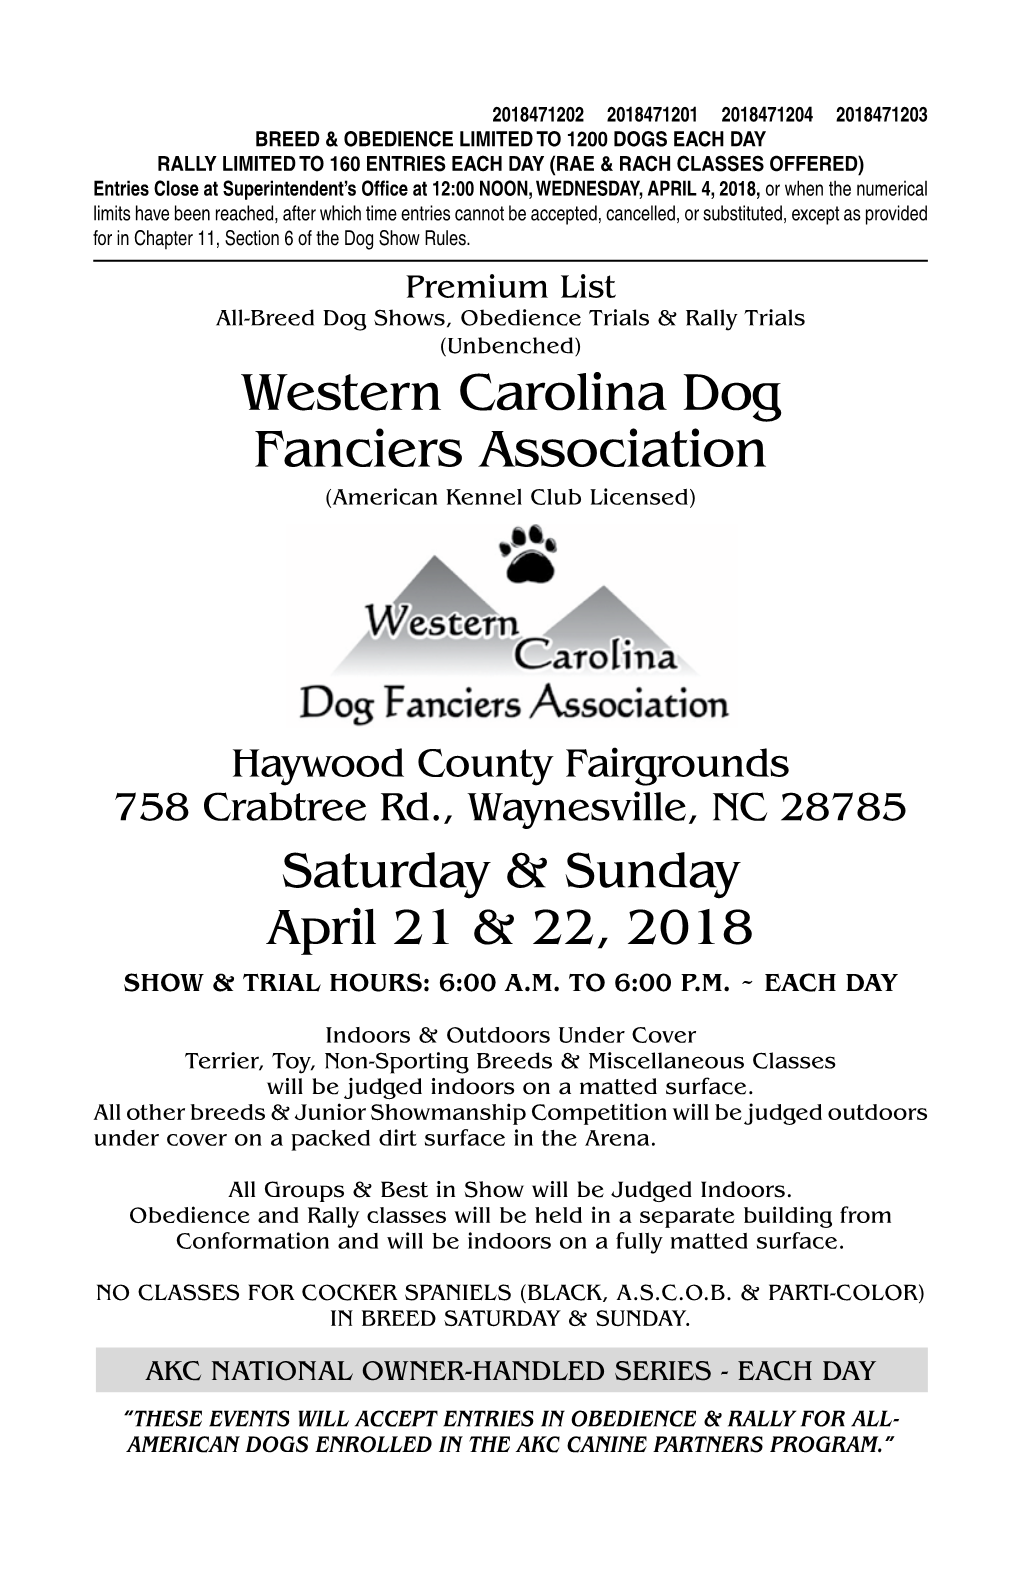 Western Carolina Dog Fanciers Association (American Kennel Club Licensed)